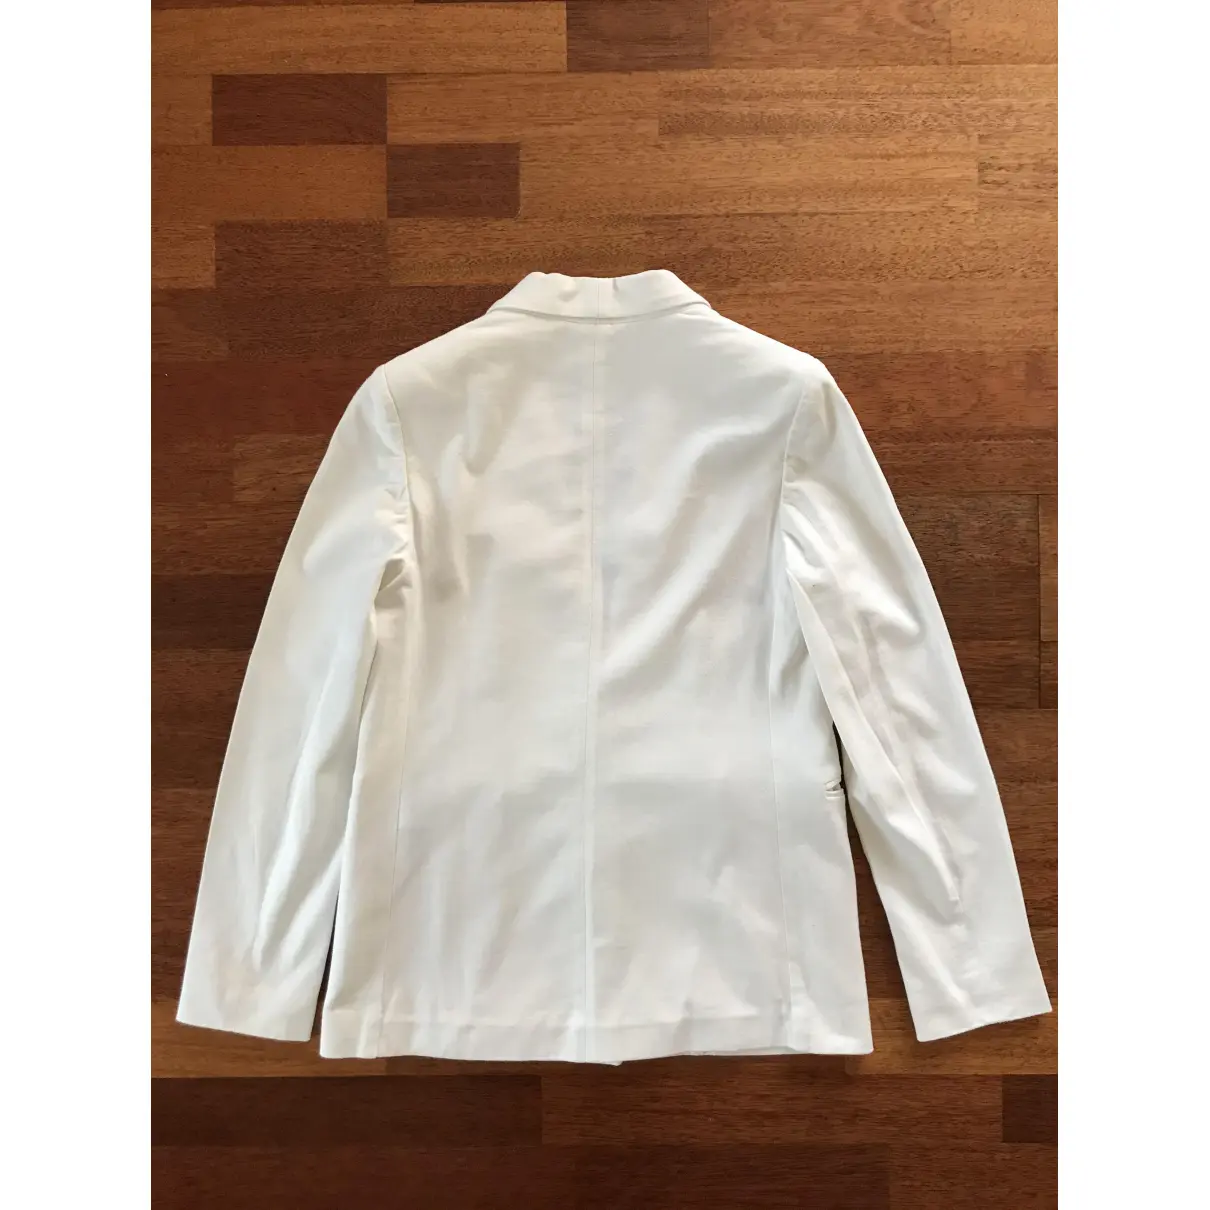 Buy Brunello Cucinelli White Cotton Jacket online